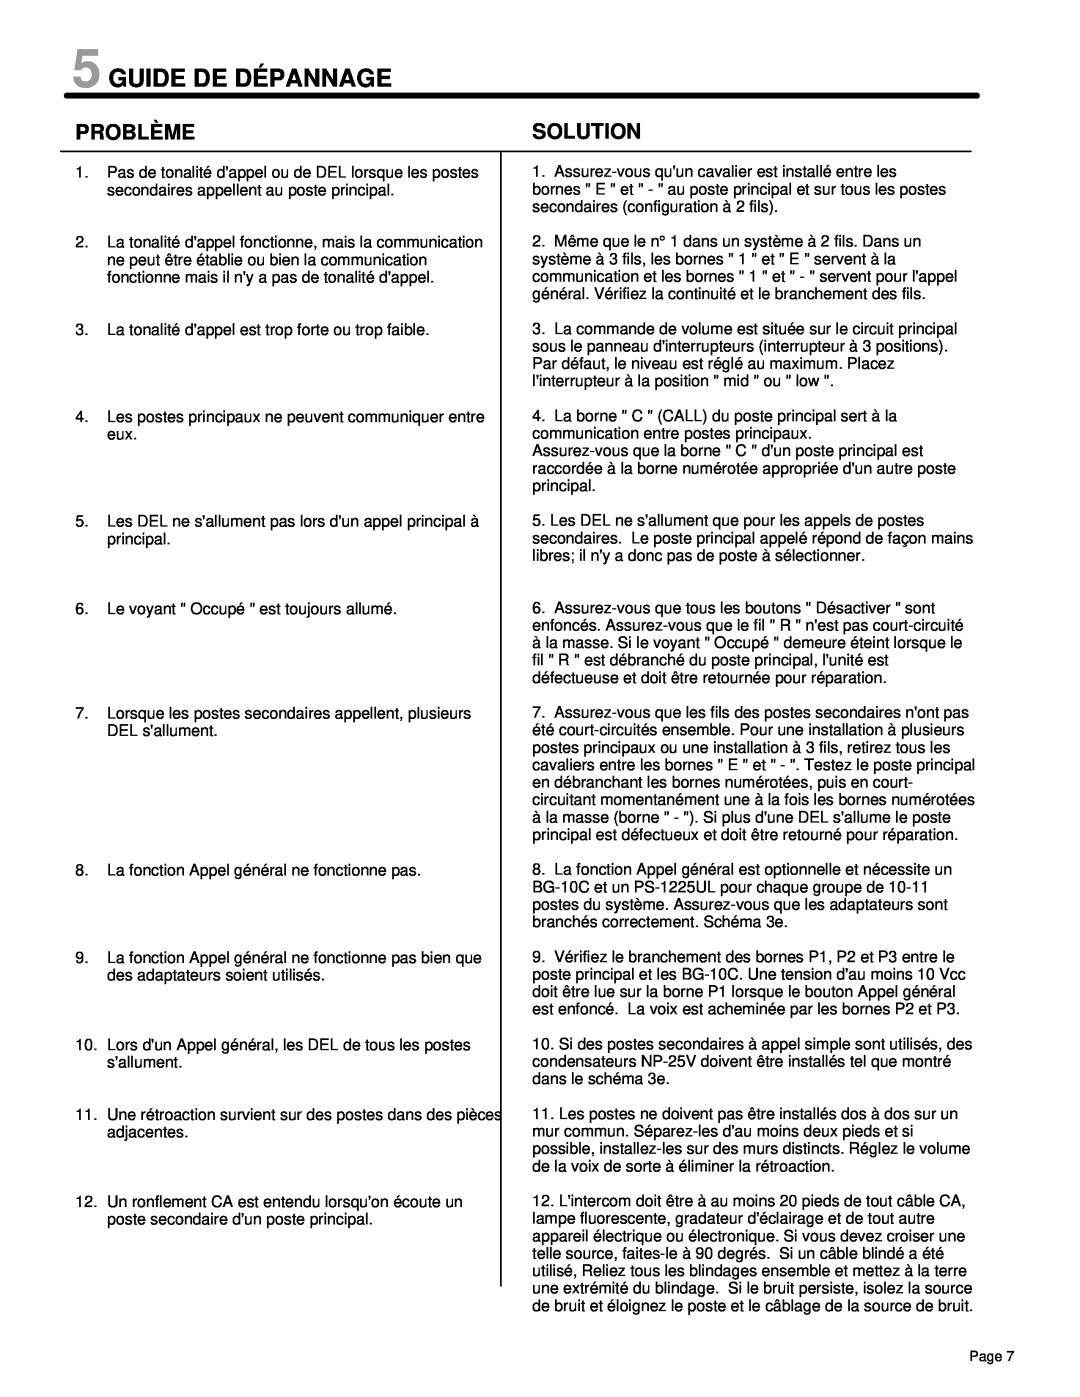 Aiphone LAF-C manual Guide De Dépannage, Problème, Solution 